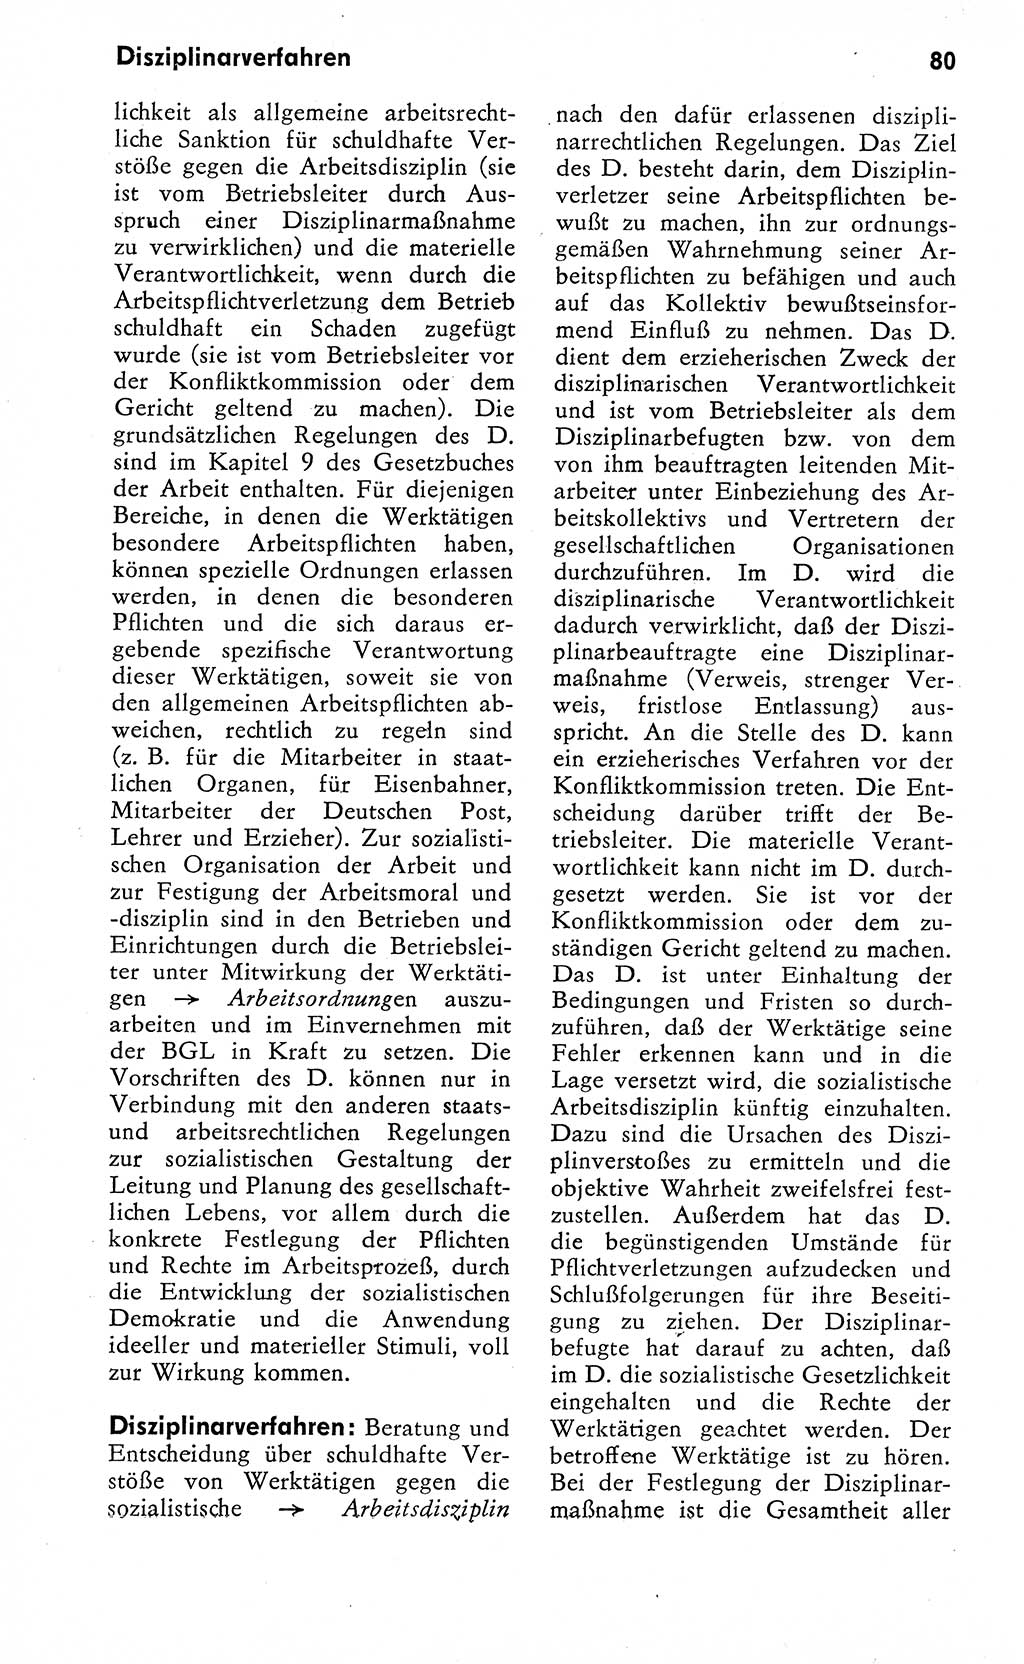 Wörterbuch zum sozialistischen Staat [Deutsche Demokratische Republik (DDR)] 1974, Seite 80 (Wb. soz. St. DDR 1974, S. 80)